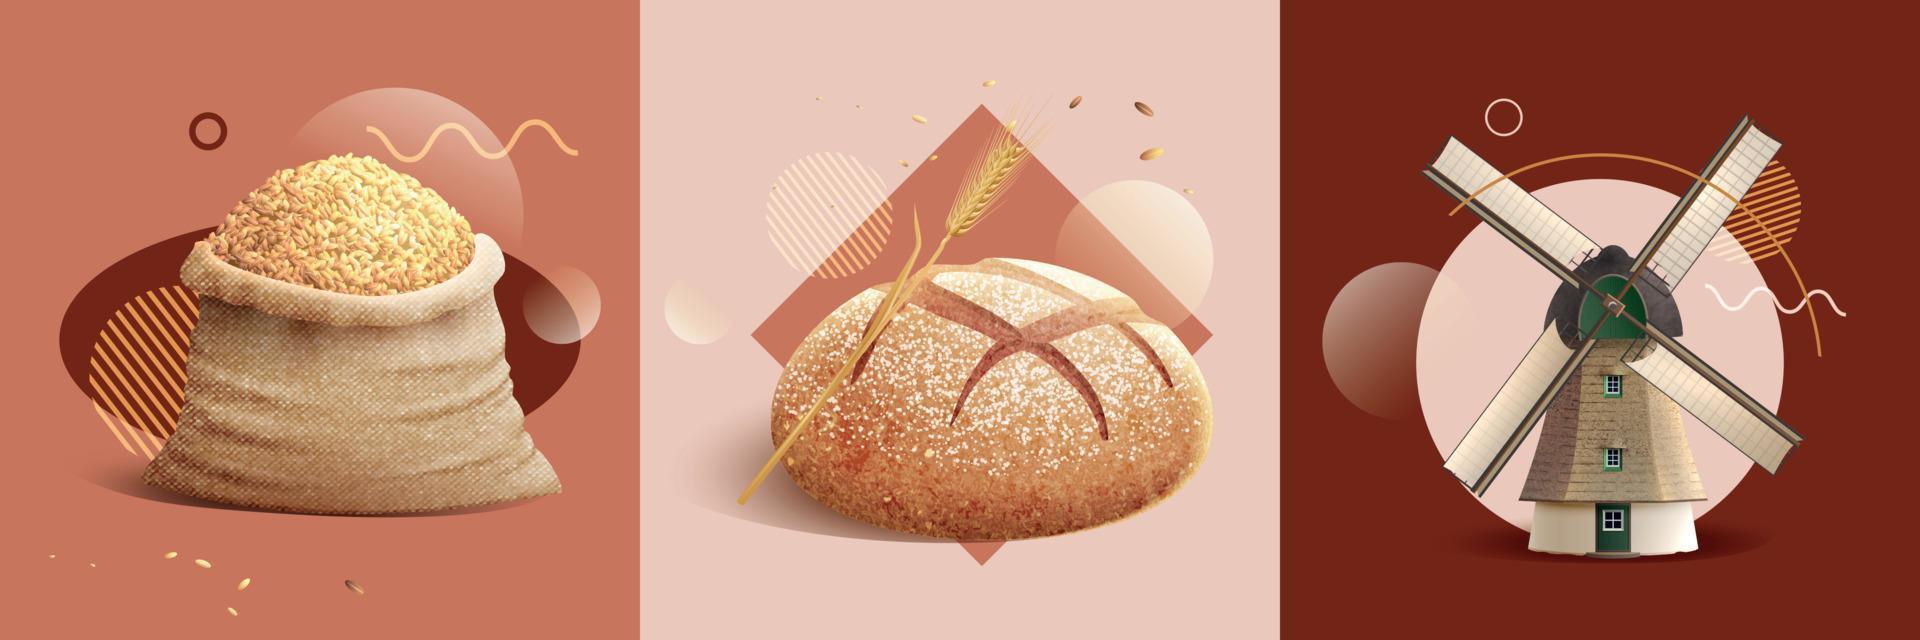 Brot realistisches Designkonzept vektor